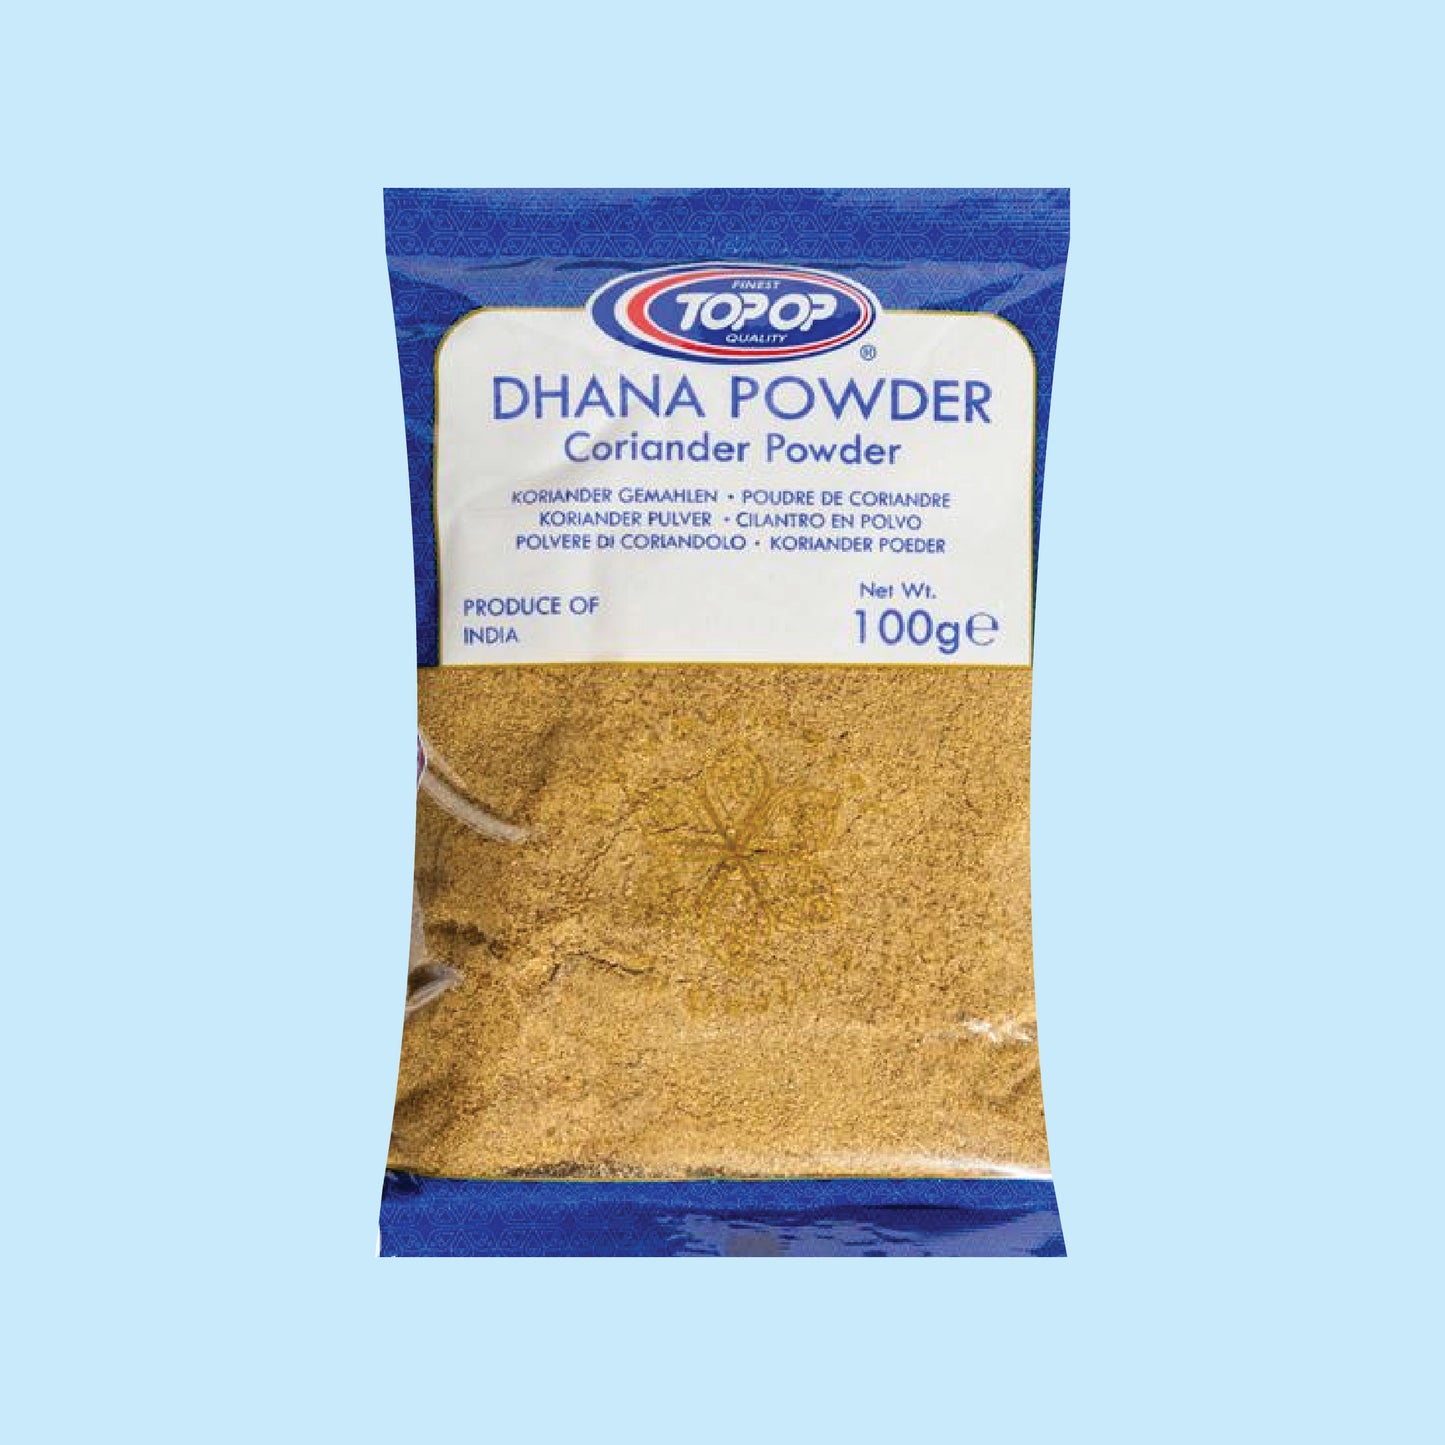 Top-Op Dhana (Coriander) Powder